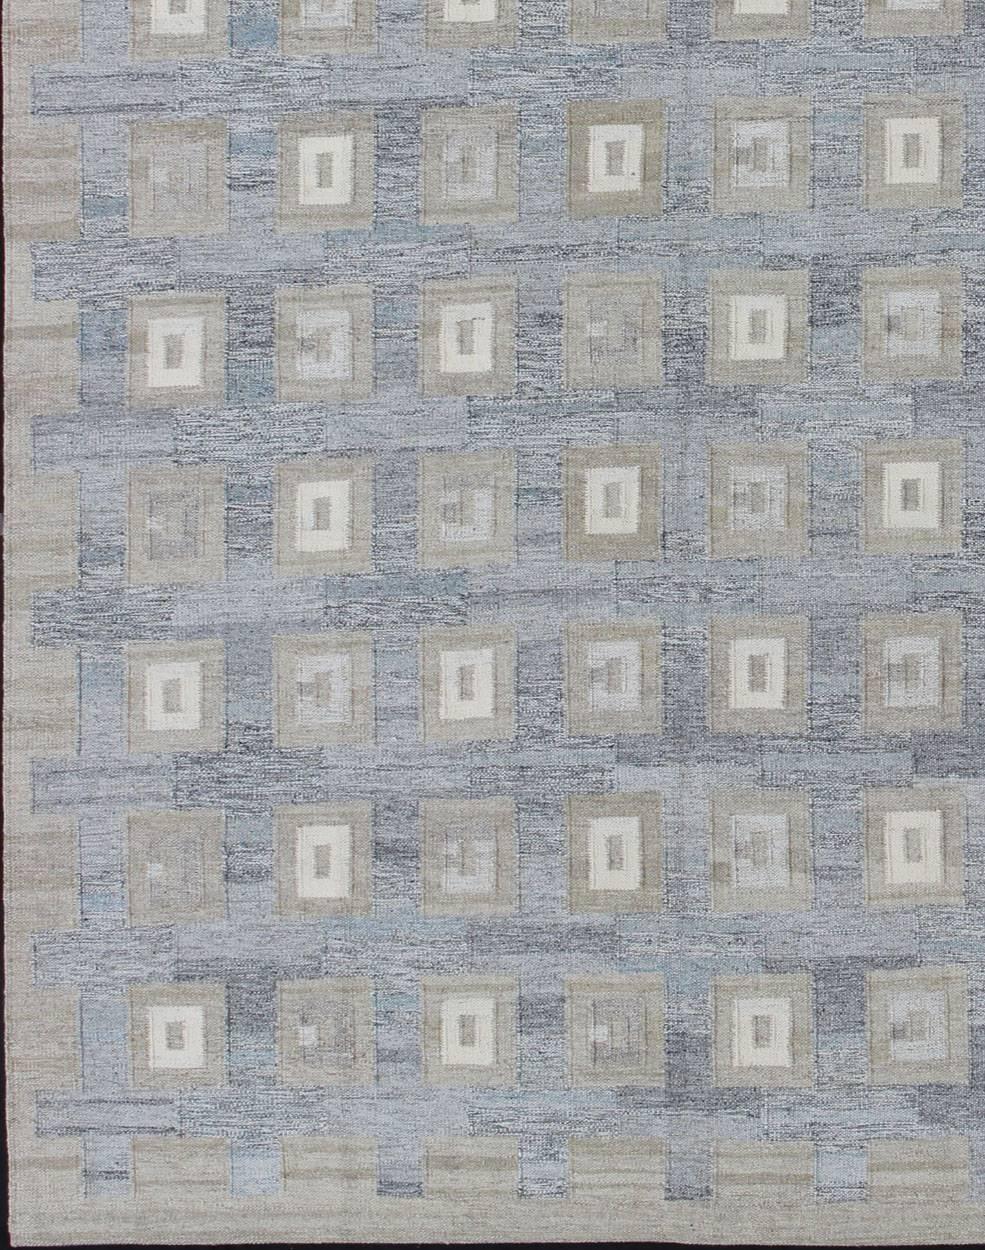 Großer Modern Scandinavian/ Schwedischer Geometrischer Designteppich in Quadraten von Keivan Woven Arts.

Maße: 10'4 x 13'9.

Großer moderner skandinavischer/schwedischer geometrischer Designteppich in Quadraten.
Dieser skandinavische Teppich mit